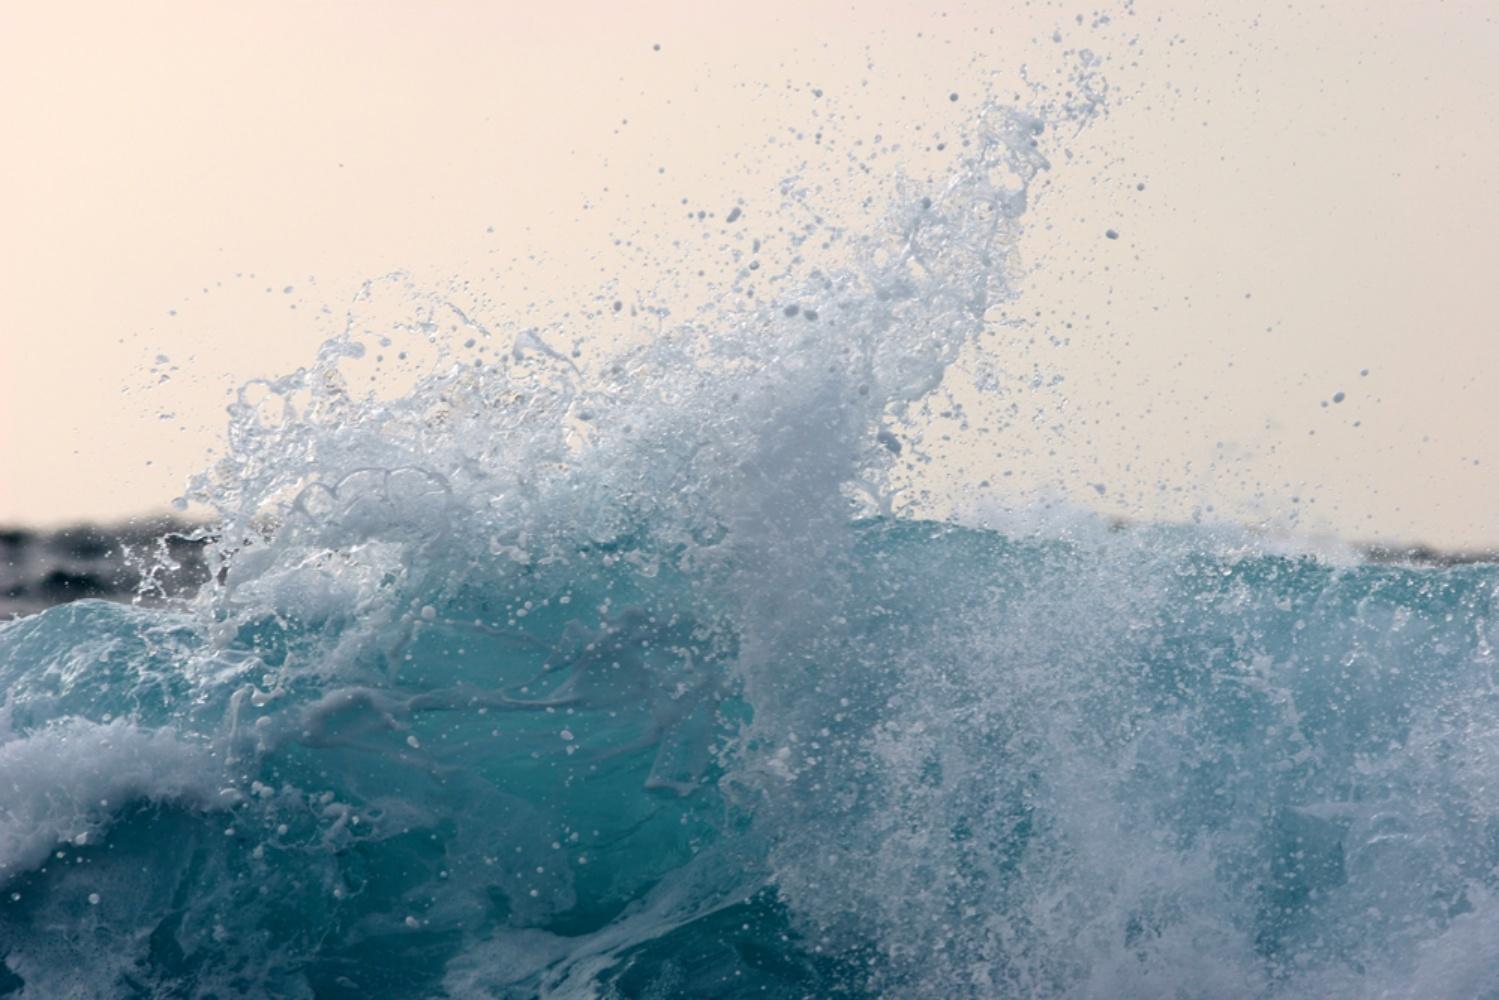 NAMI_061 - Syoin Kajii, Japanische Fotografie, Ozean, Wellen, Wasser, Natur, Kunst